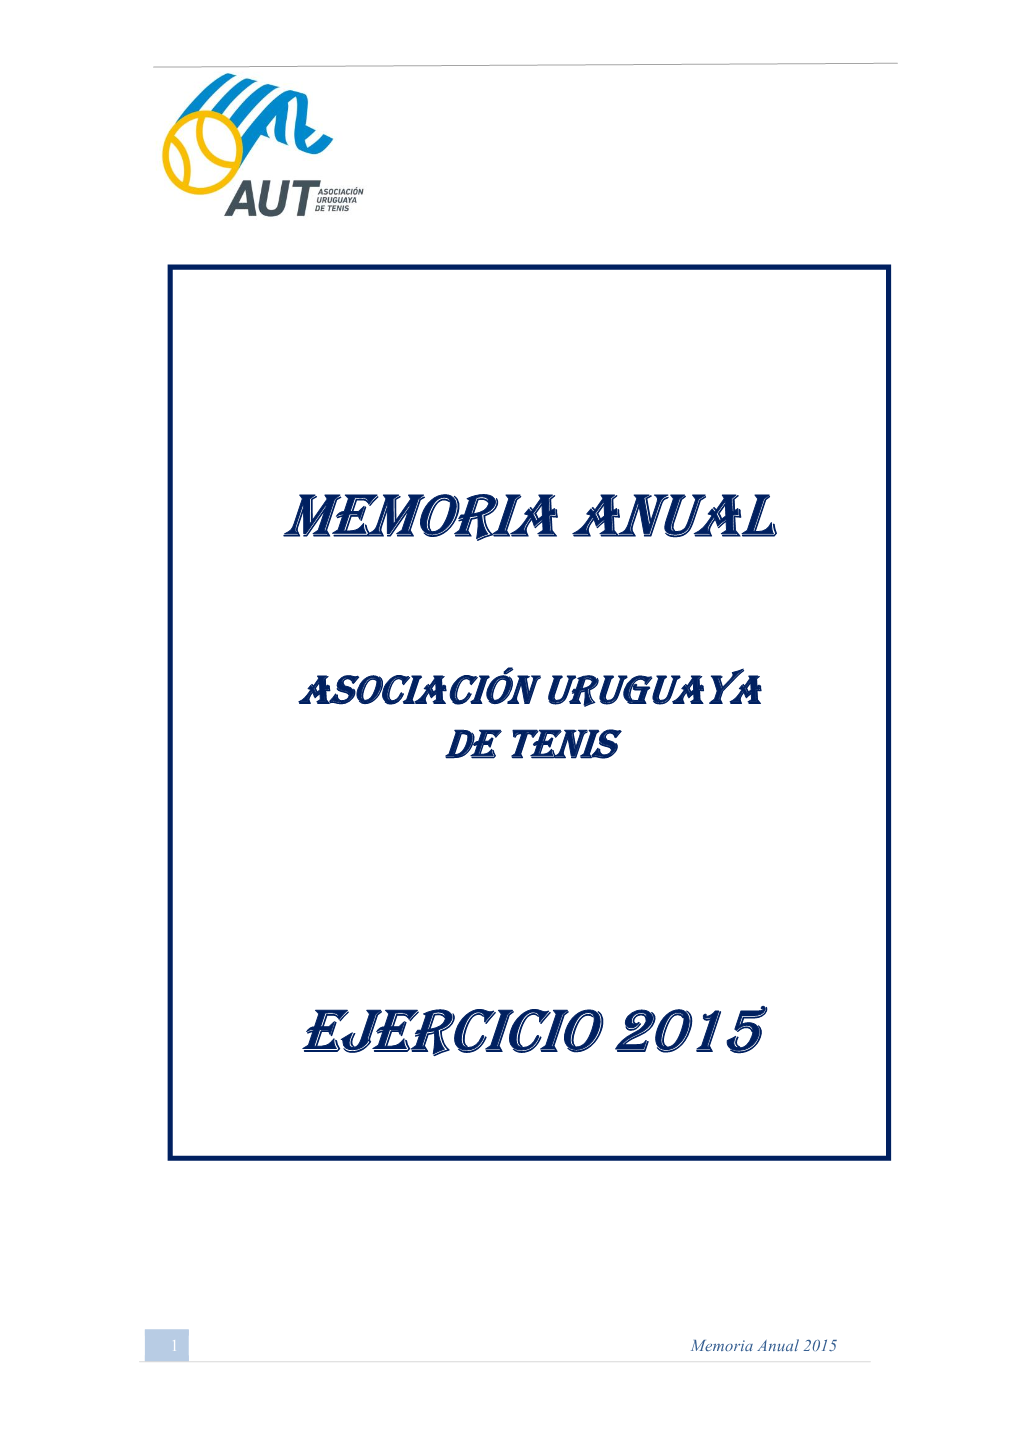 Memoria Anual Aut – 2015